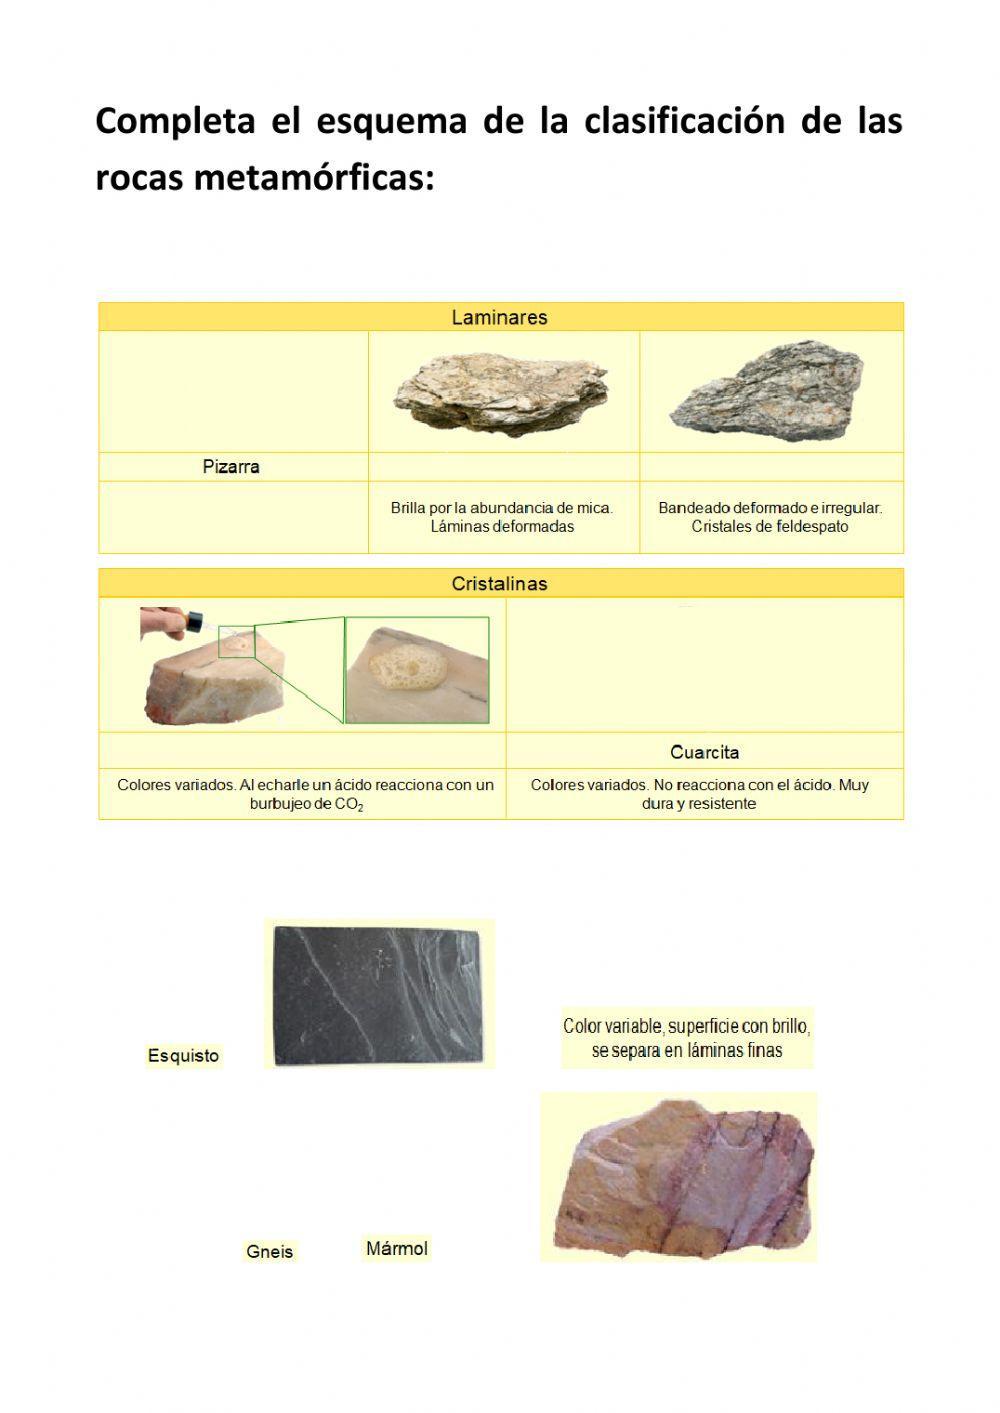 Las rocas metamórficas